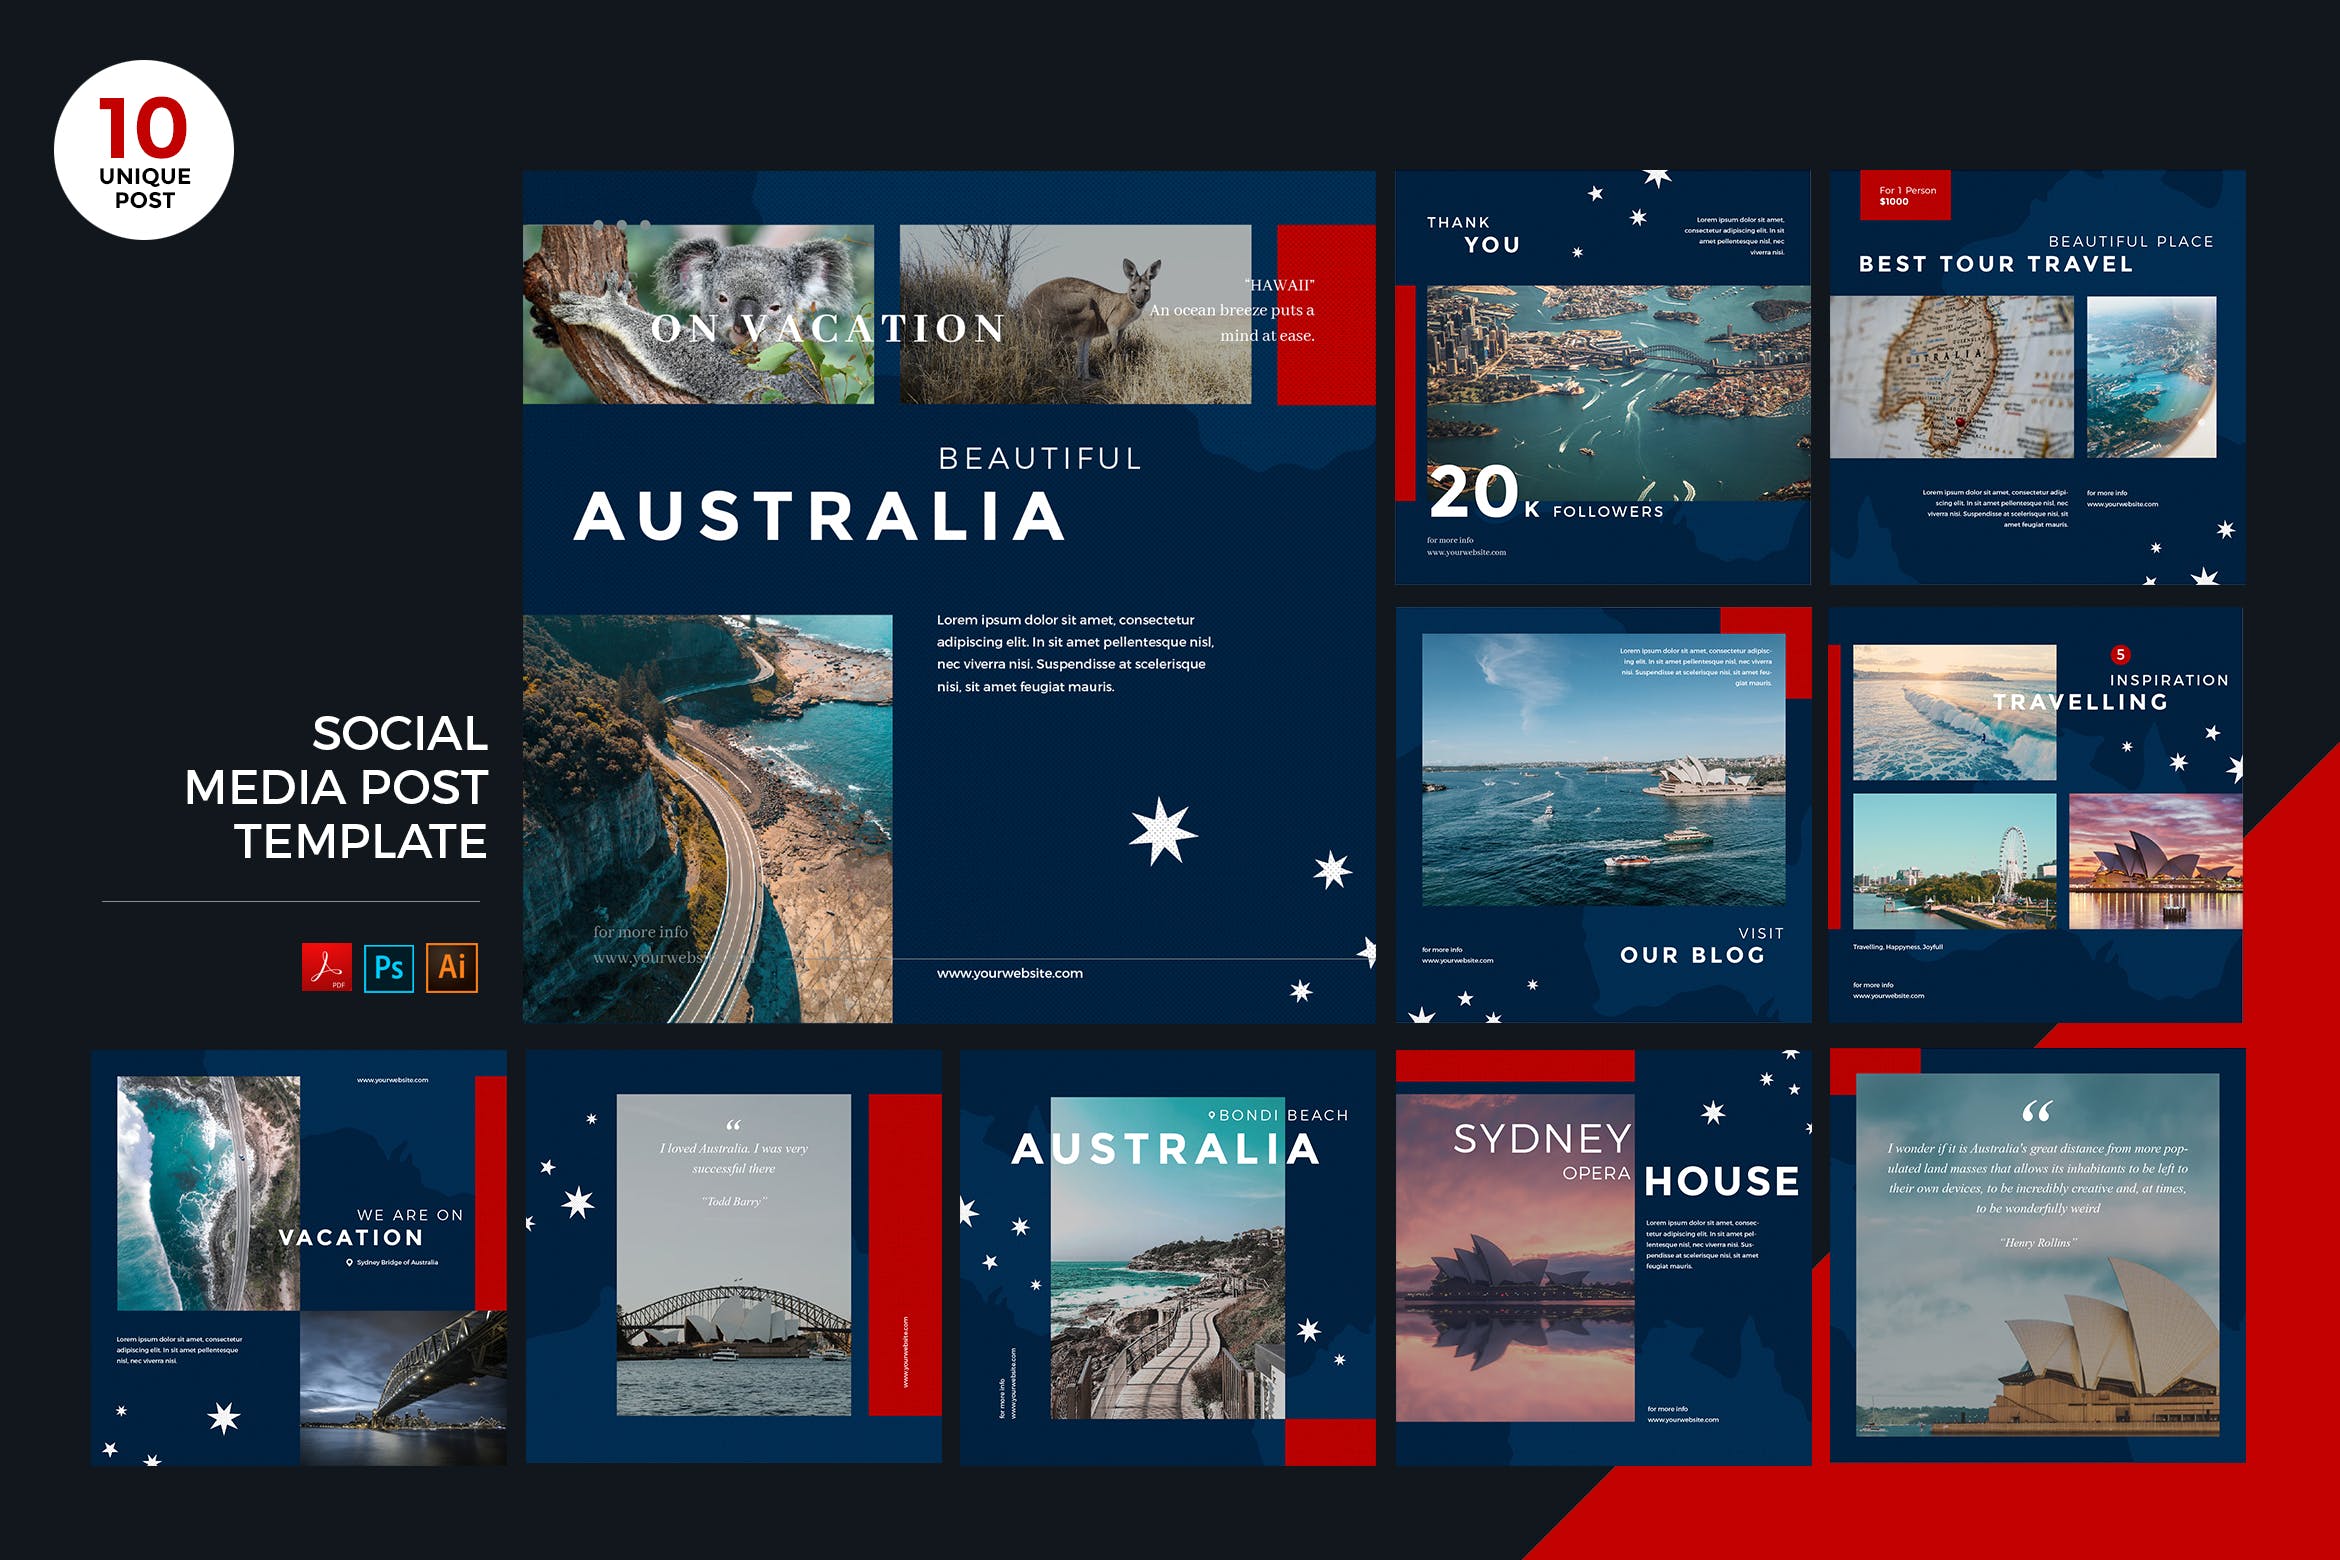 澳大利亚旅游推广社交媒体PSD&AI模板素材中国精选 Travel To Australia Social Media Kit PSD & AI插图